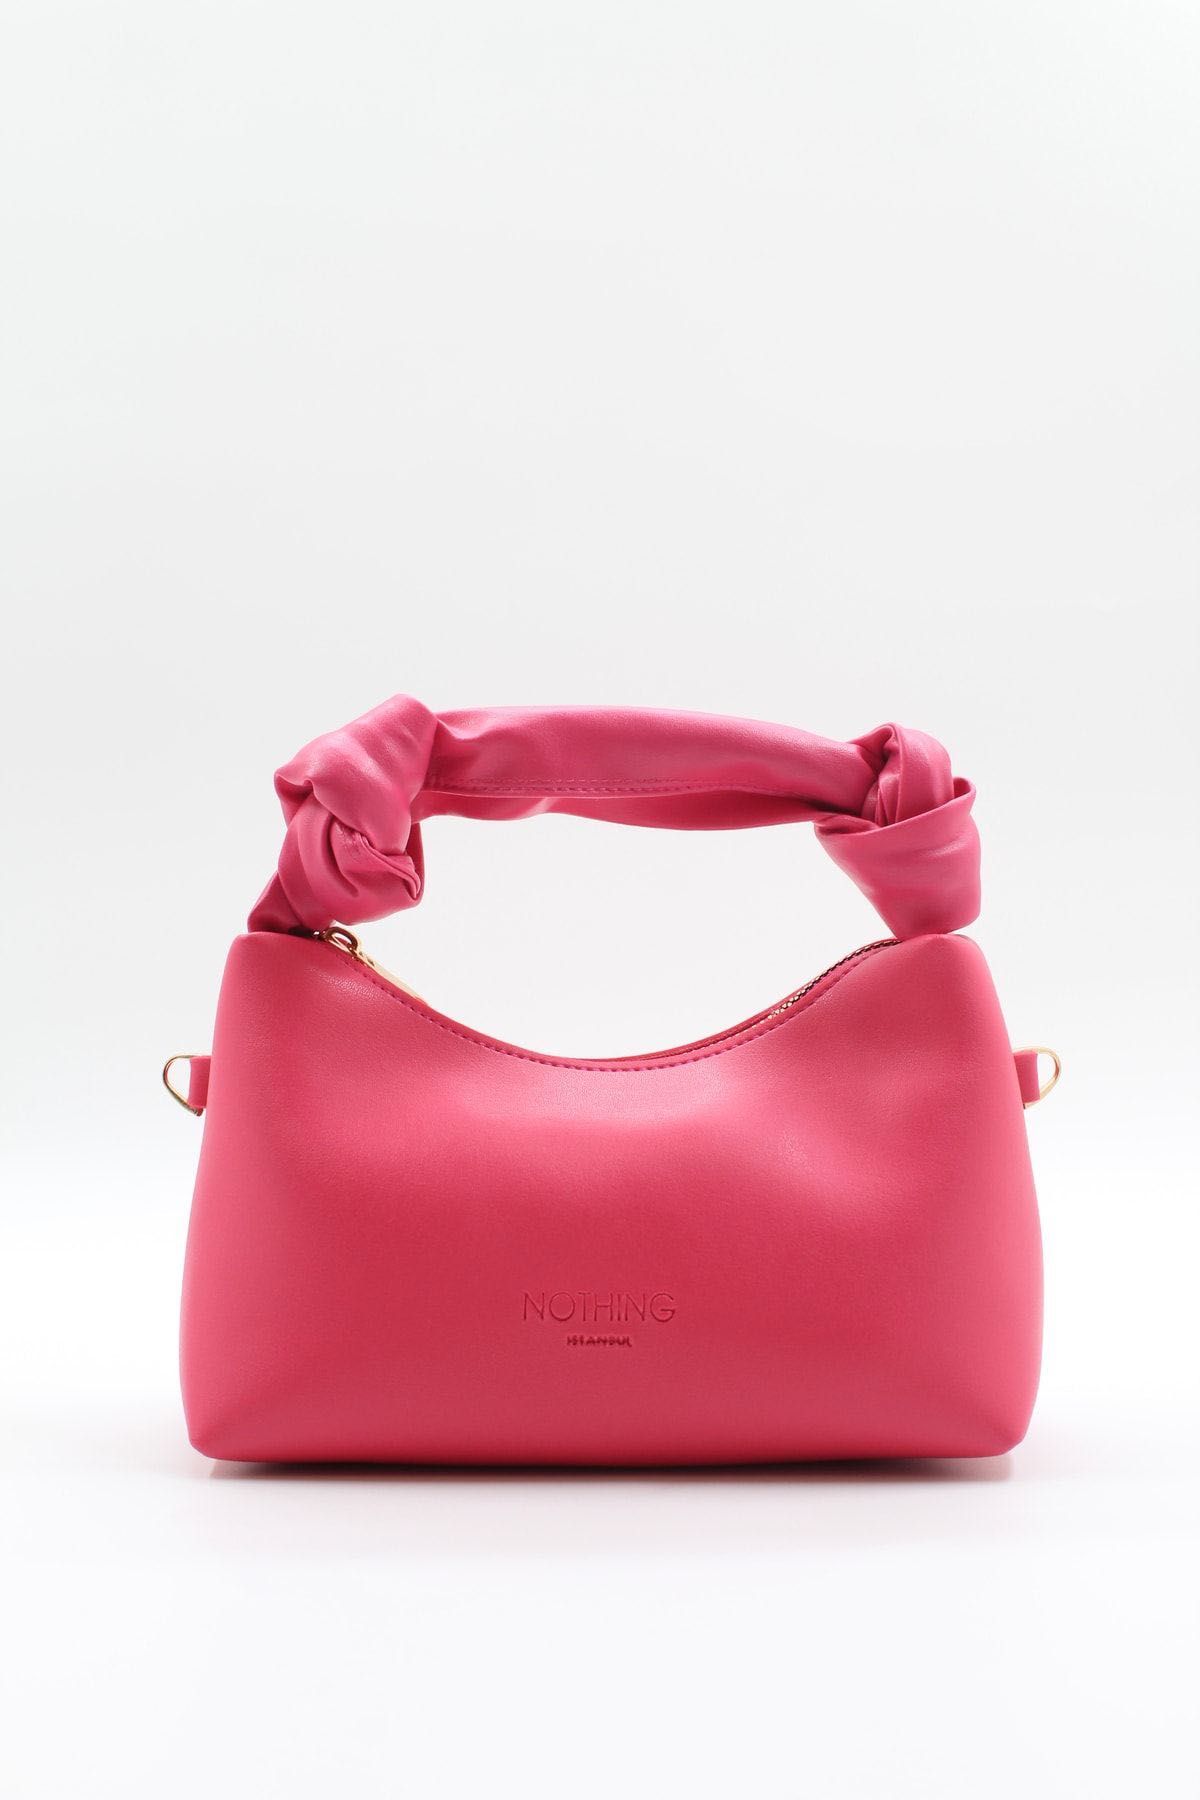 Новая сумочка в трех цветах розовая, черная, зеленая Турция